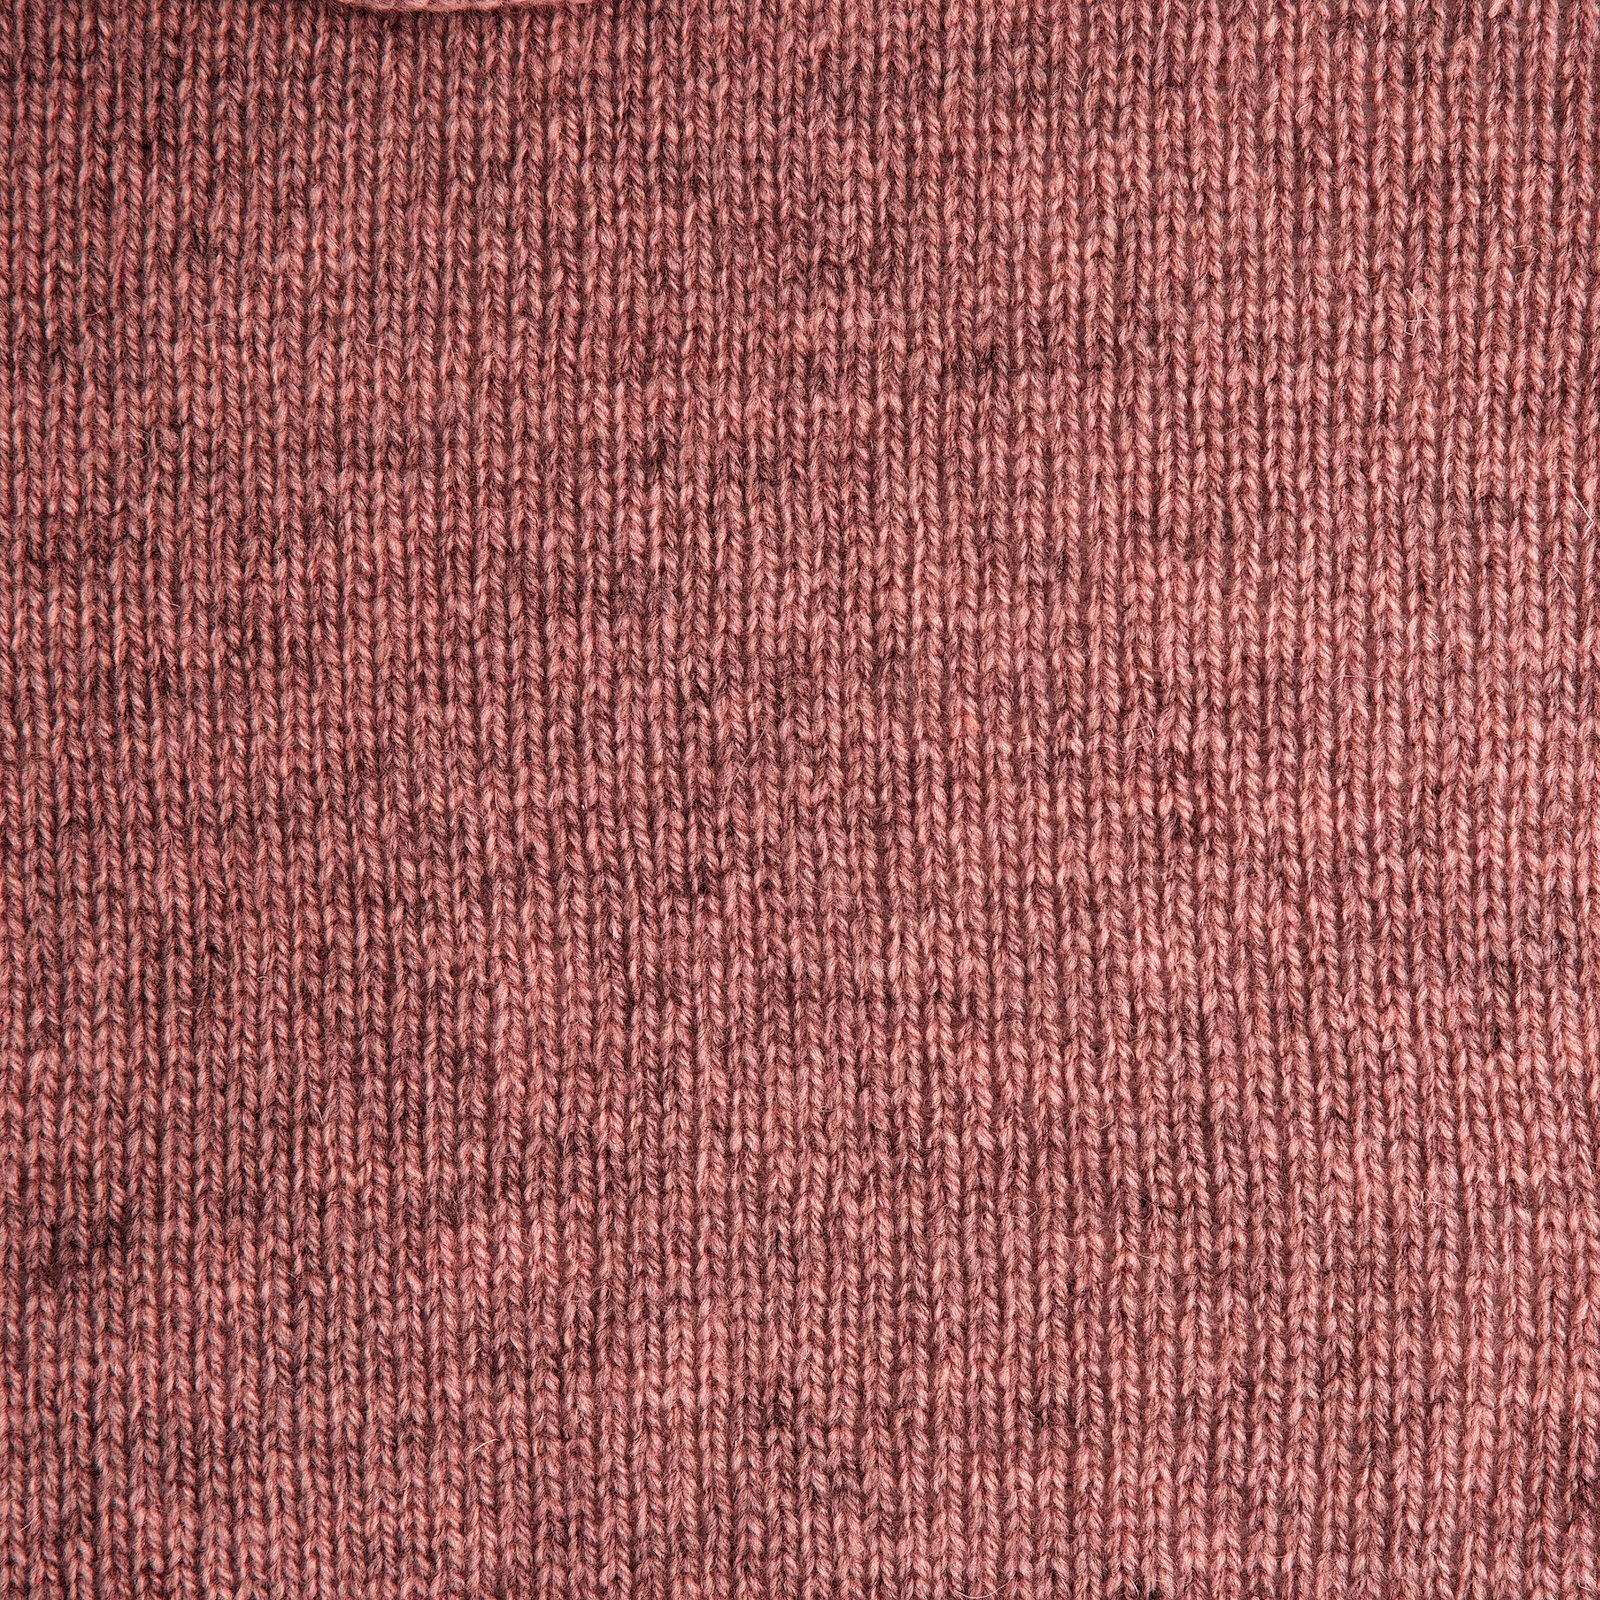 FRAYA, 100% wool yarn "Mindful", rhubarb melange 90053399_sskit